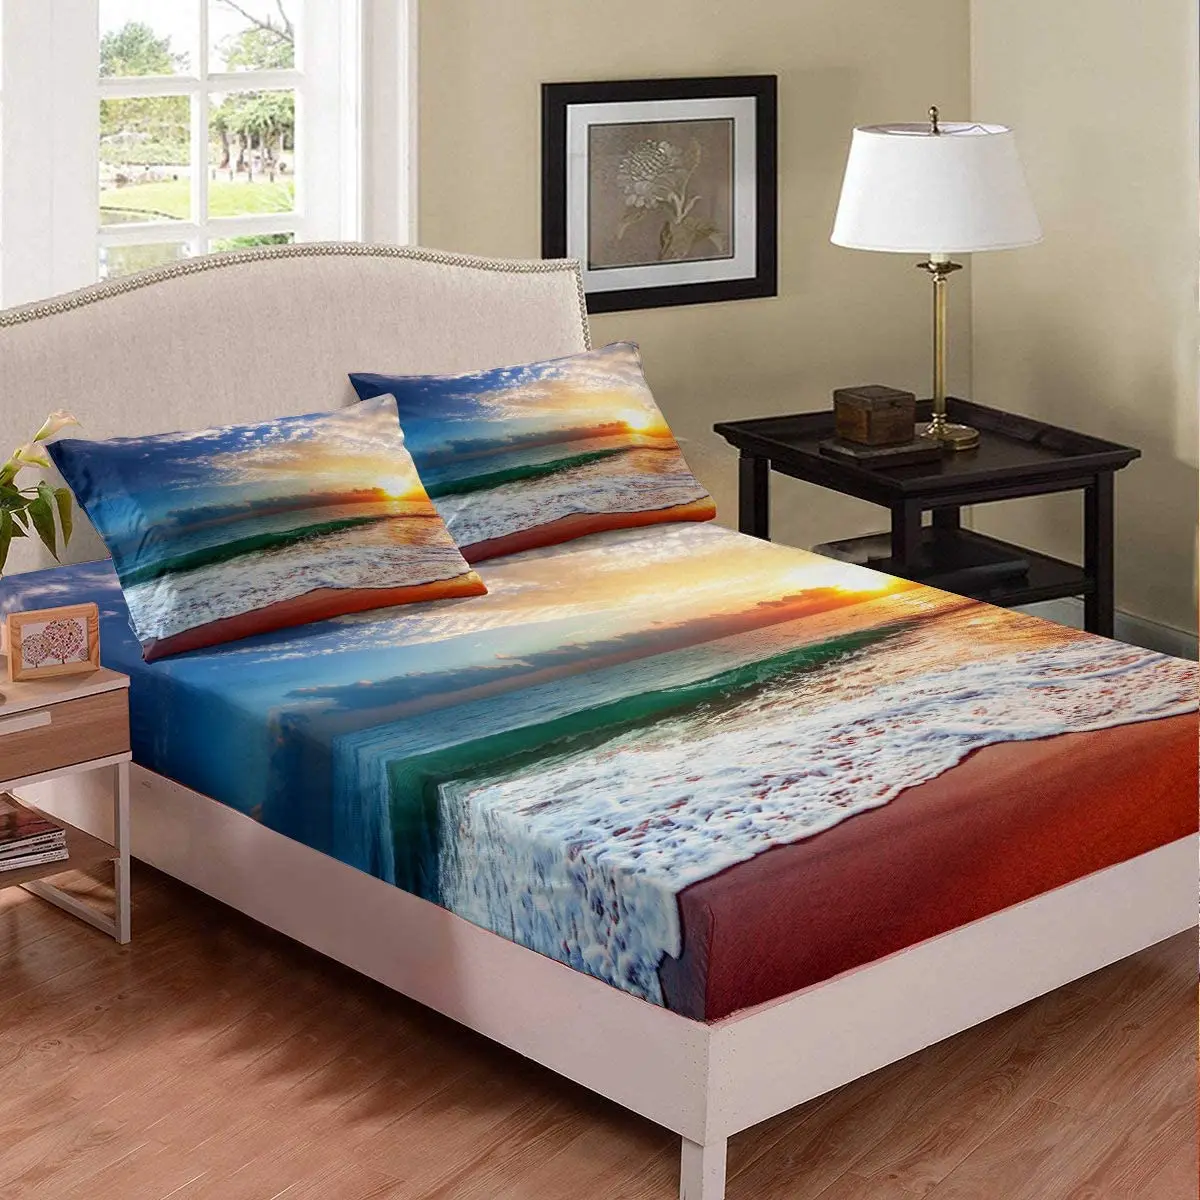 

Комплект постельного белья для мальчиков и девочек, натяжная простыня с рисунком океана и заката, тема «Природа», в гавайском стиле